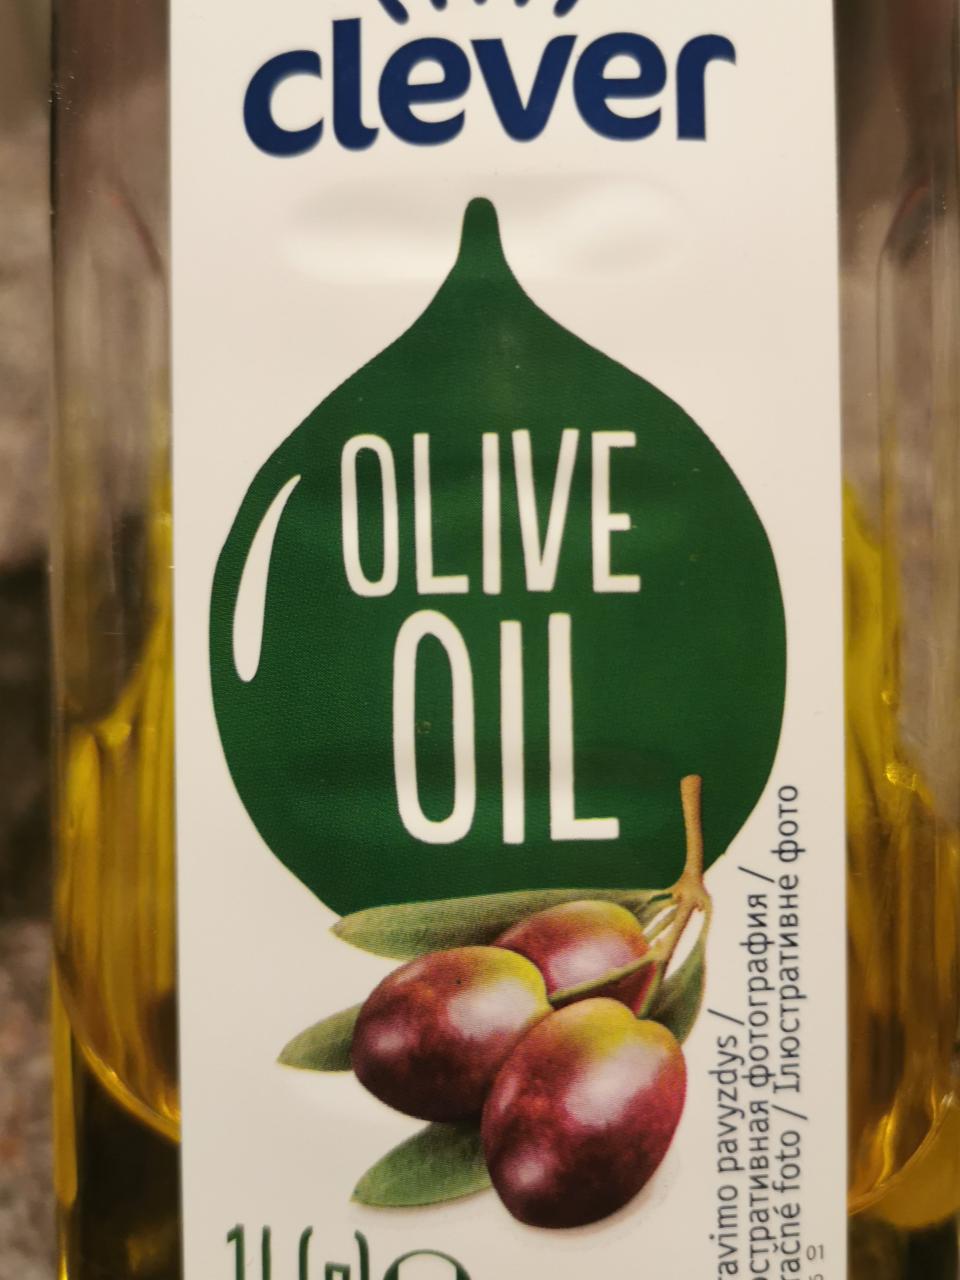 Fotografie - Clever Olive oil